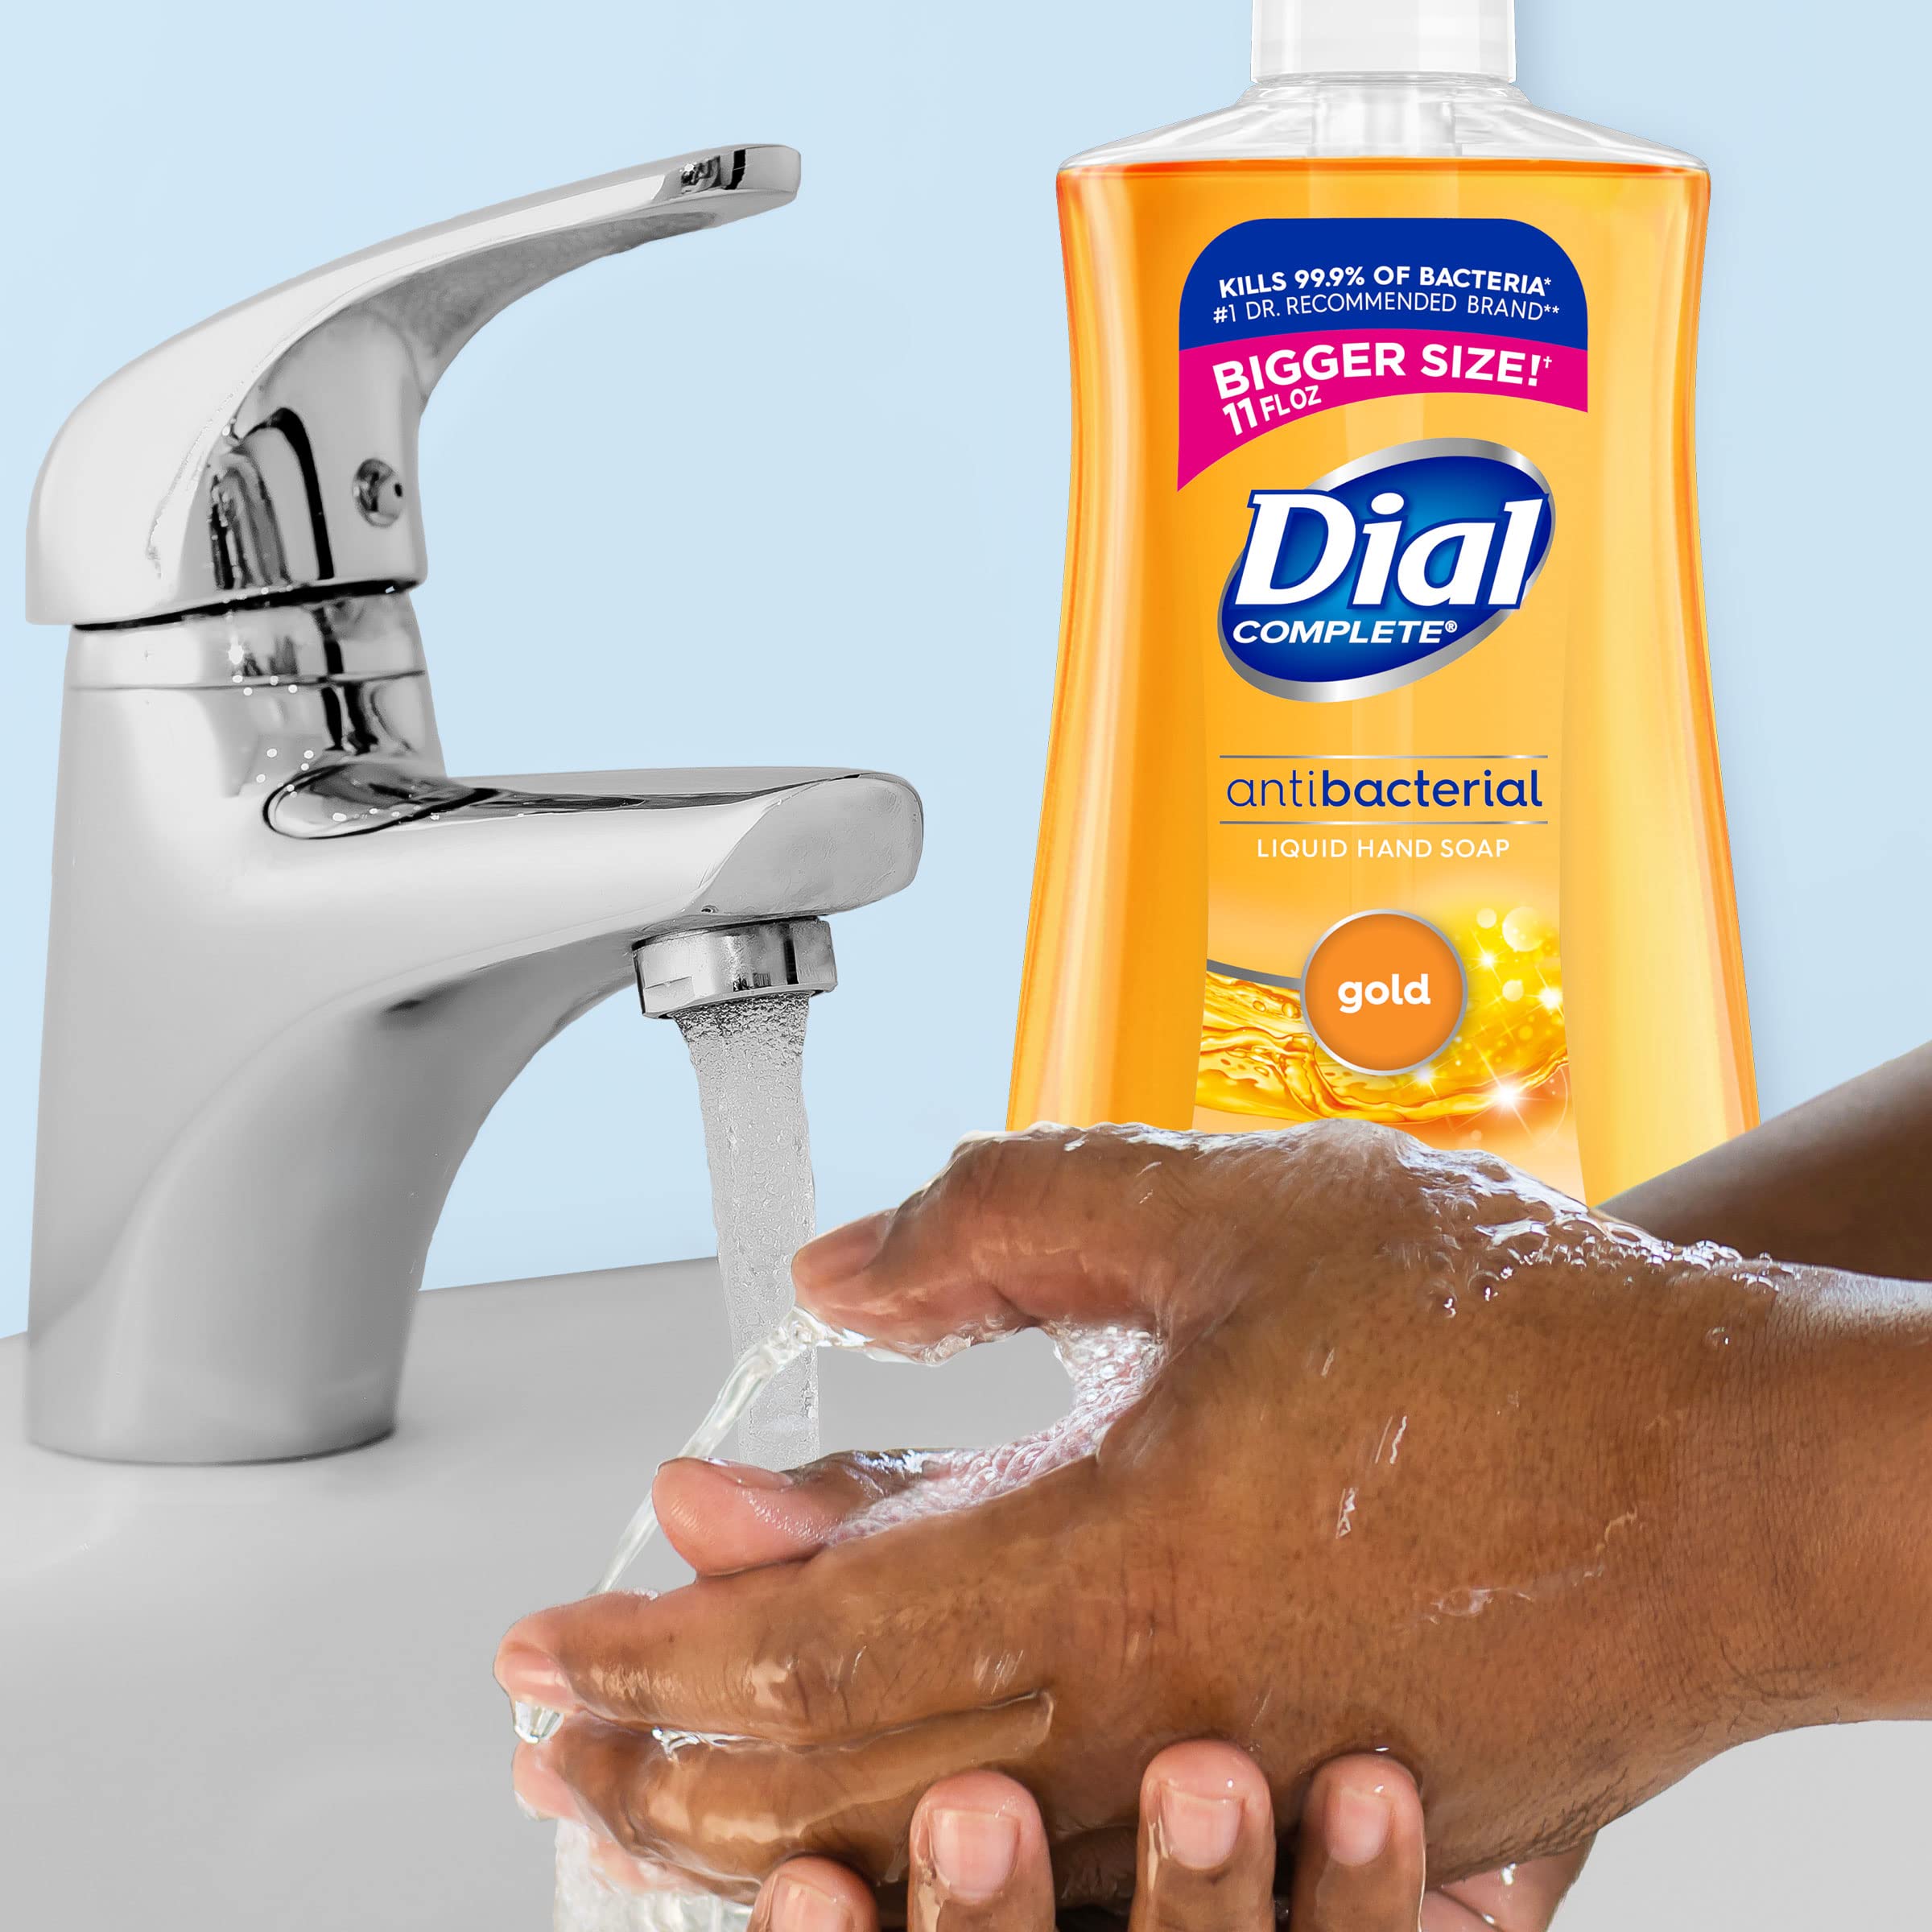 Dial Antibacterial Liquid Hand Soap, Gold, 11 Fl Oz